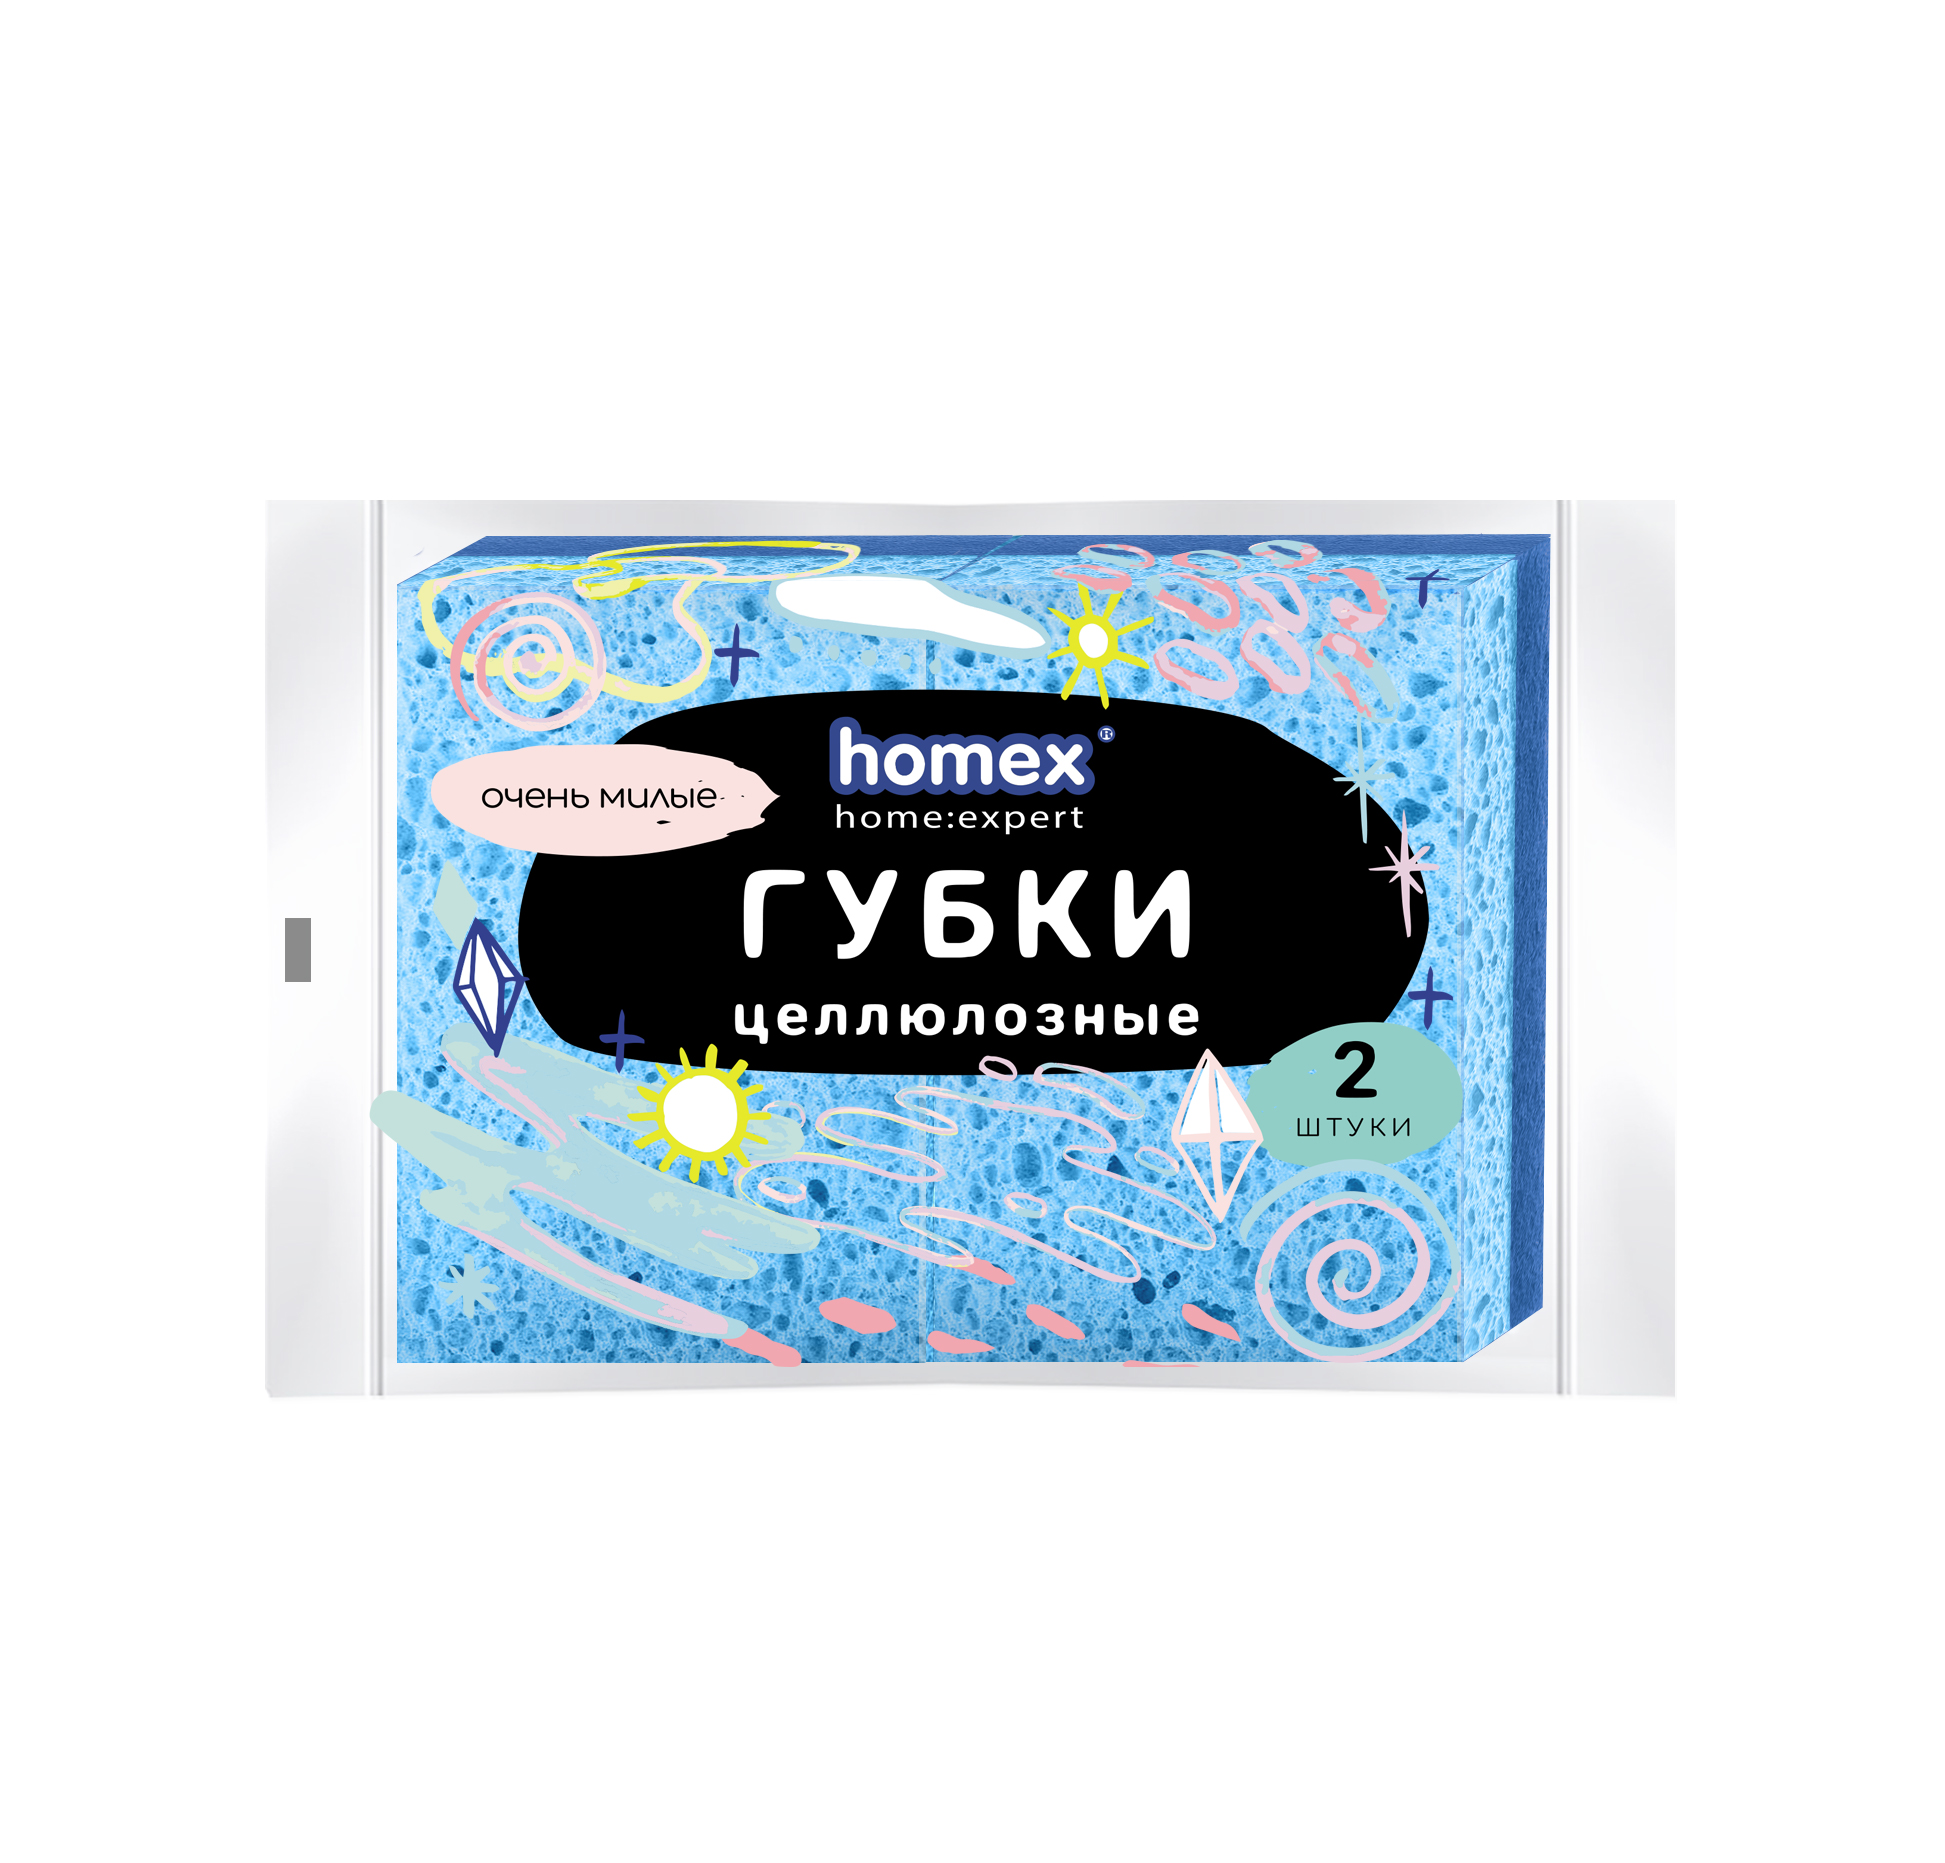 губки для посуды homex очень модные 6 шт Губки целлюлозные Homex 2 шт в ассортименте